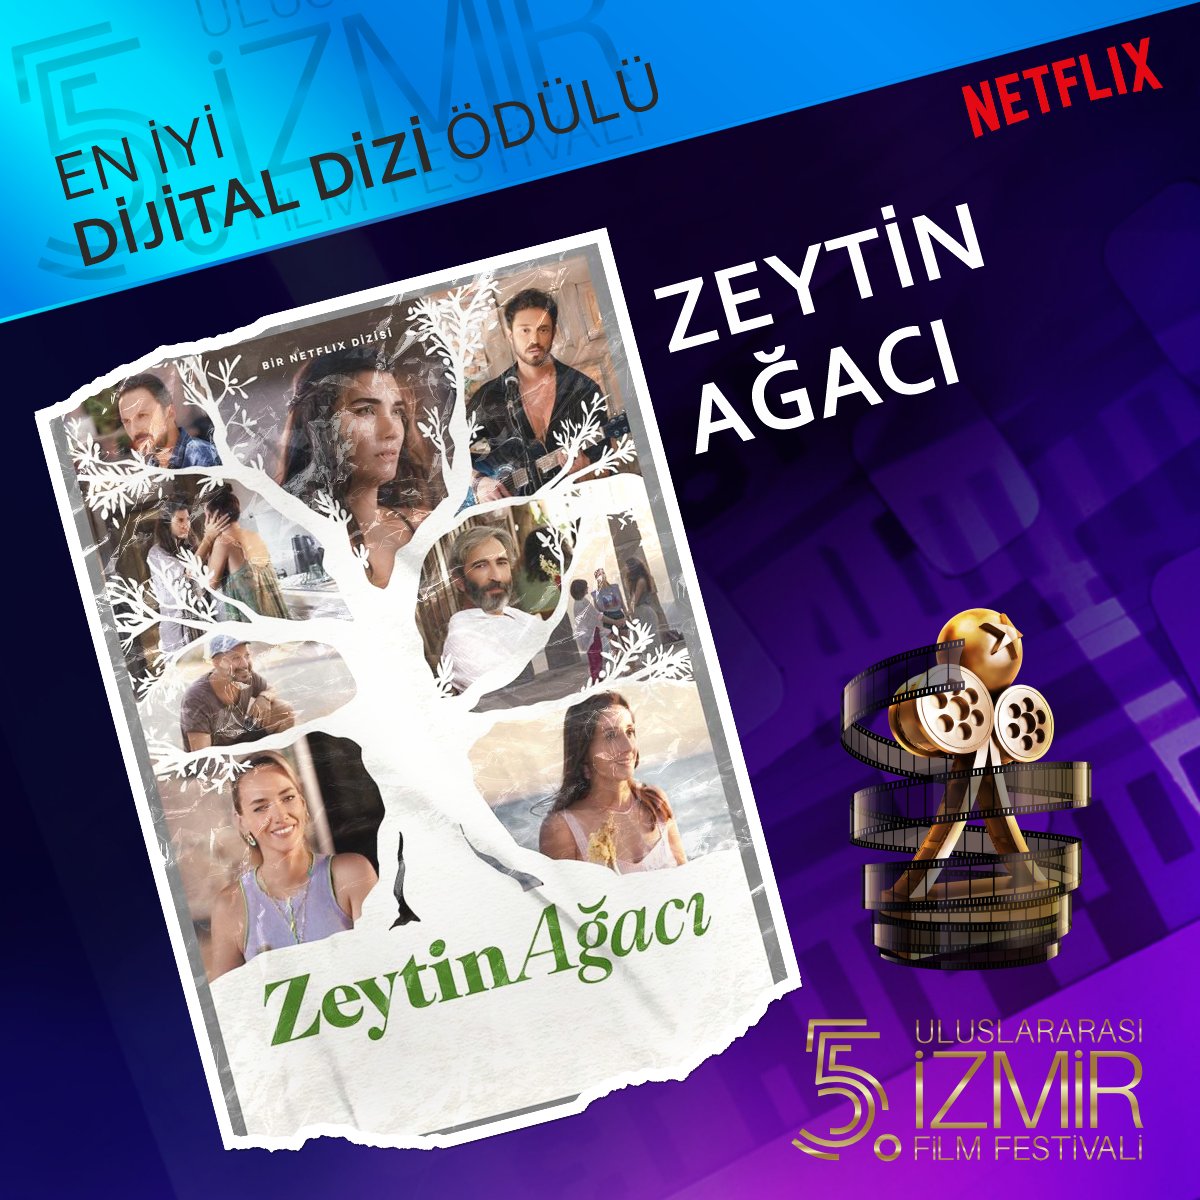 En iyi dijital dizi ödülü @izmirfilmfest #ZeytinAğacı #Anotherself in olmuş ama kadın oyuncu ödülü başkasina gitmiş bu nasıl bir tezatlıktır ya şaka gibi şaka gibi gerçekten 🤮
#TubaBüyüküstün